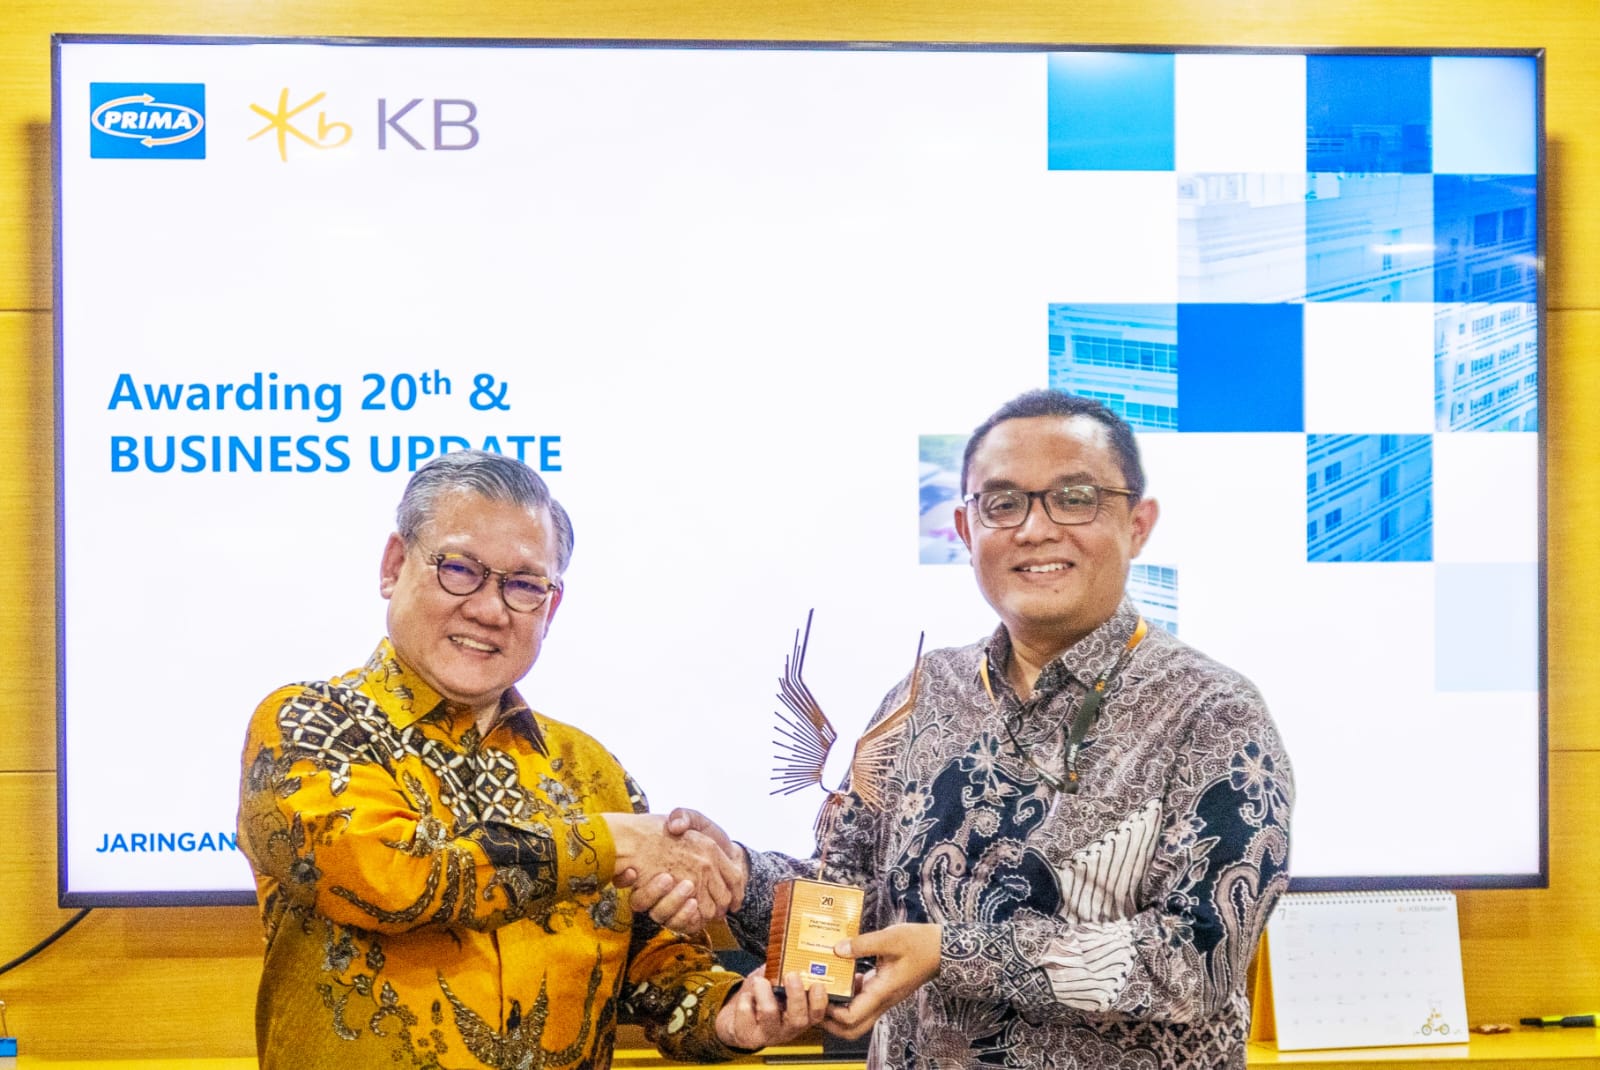 Apresiasi Jaringan PRIMA Untuk KB Bank, Tandai Sinergi 20 Tahun